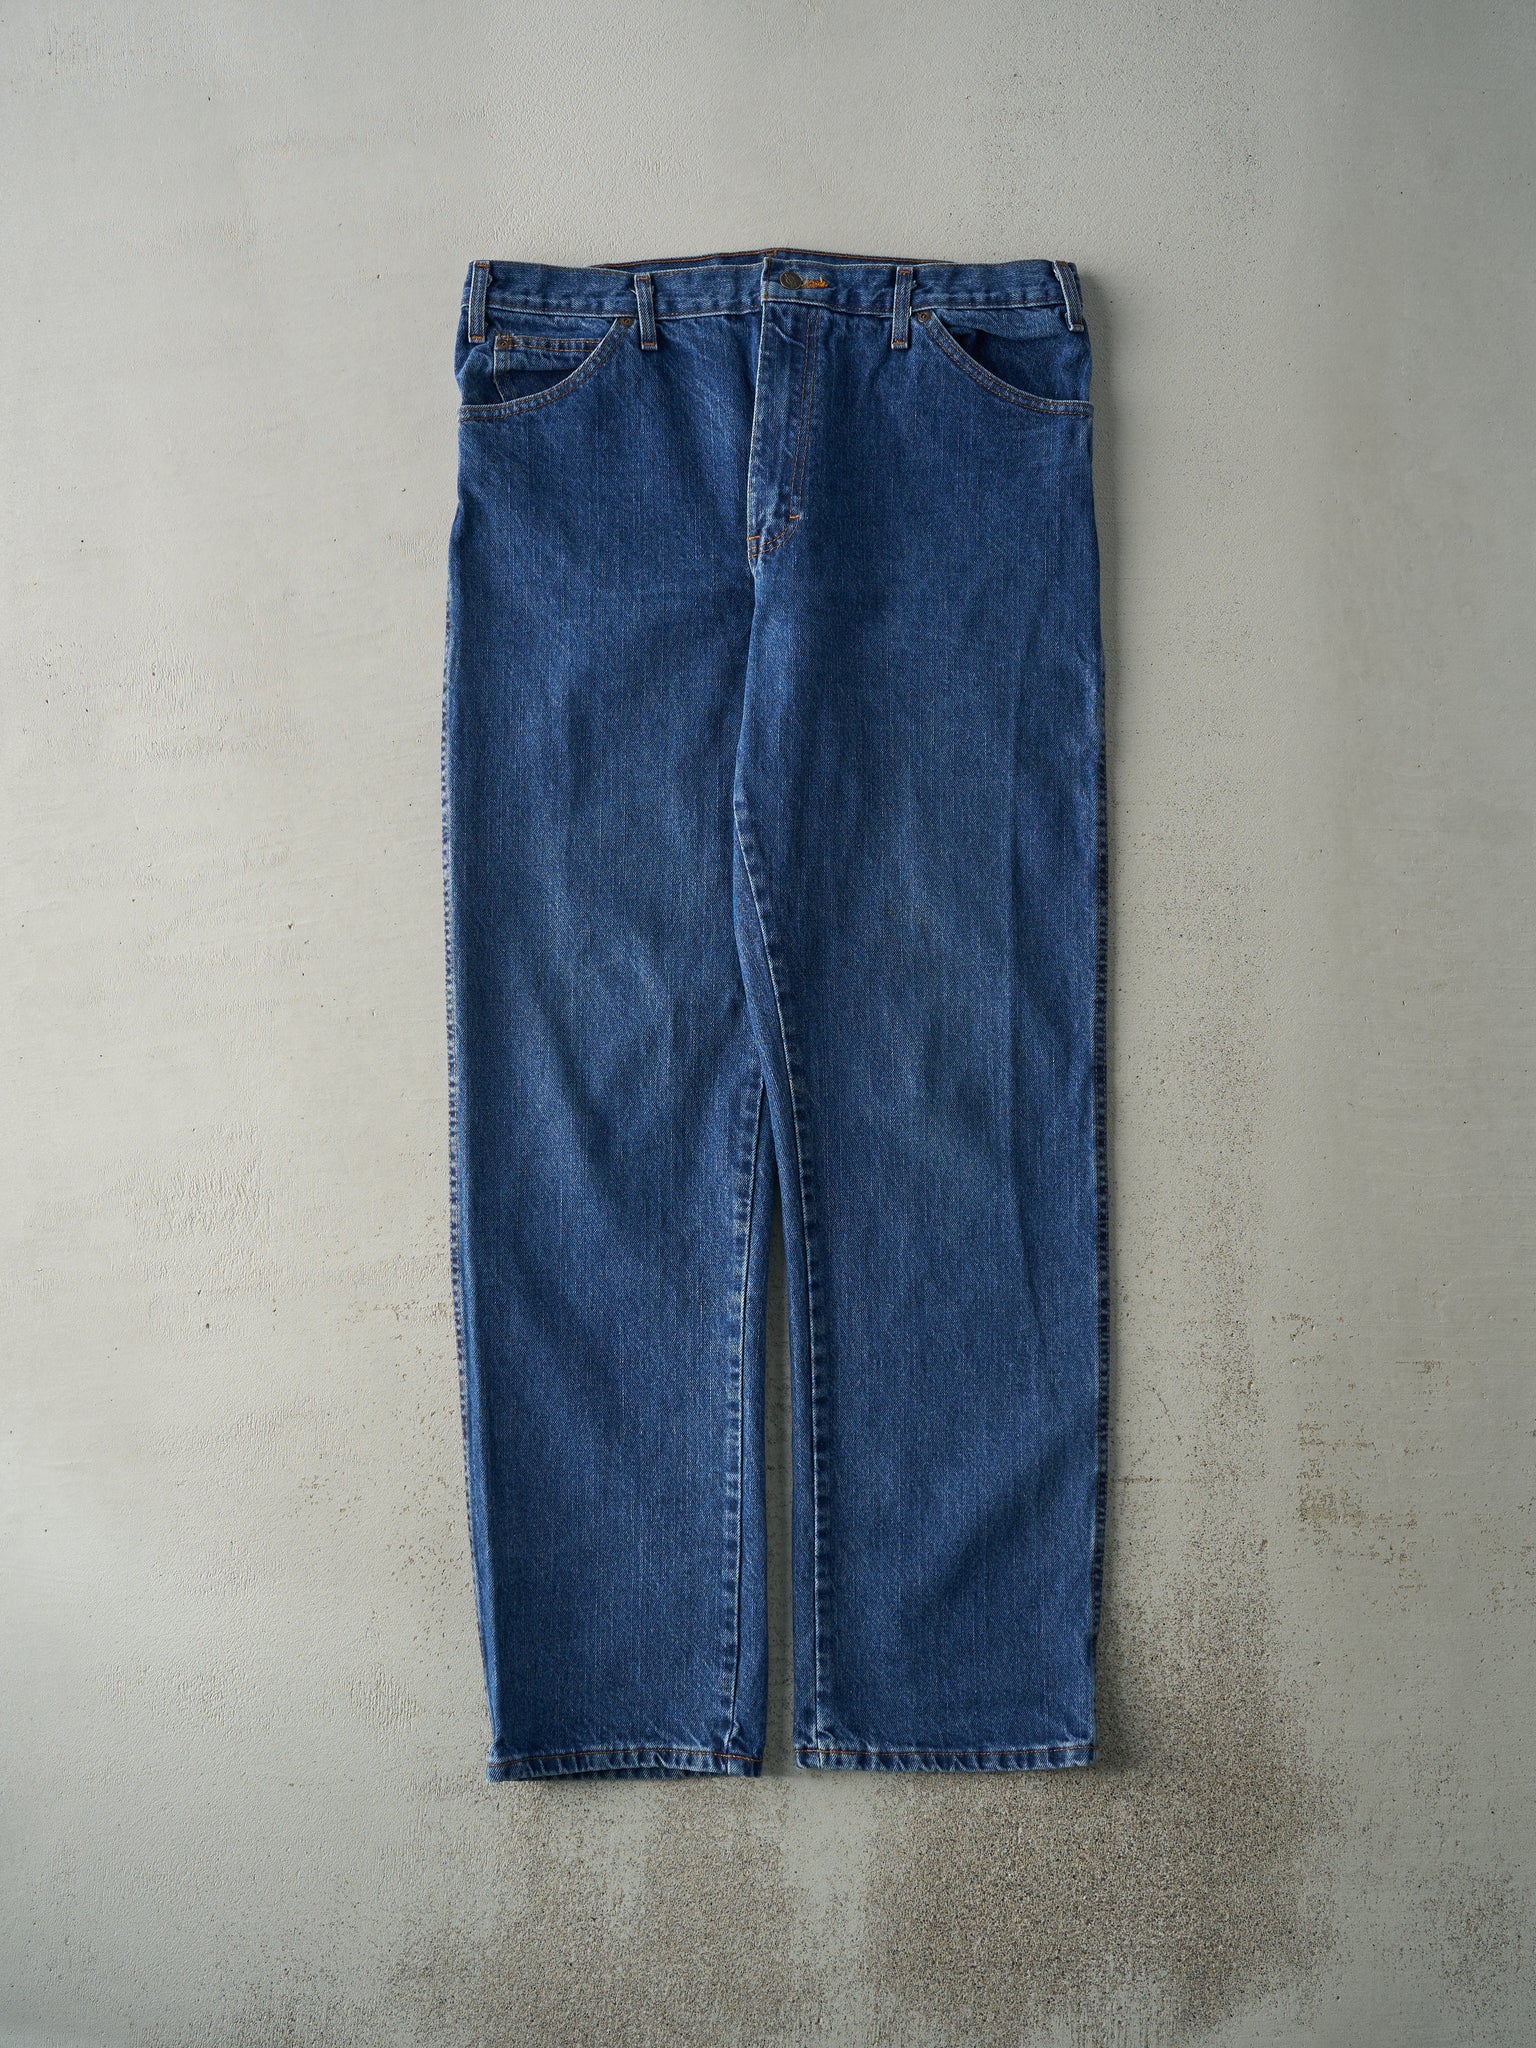 Vintage 90s Dark Wash Dickies Jeans (36x34)